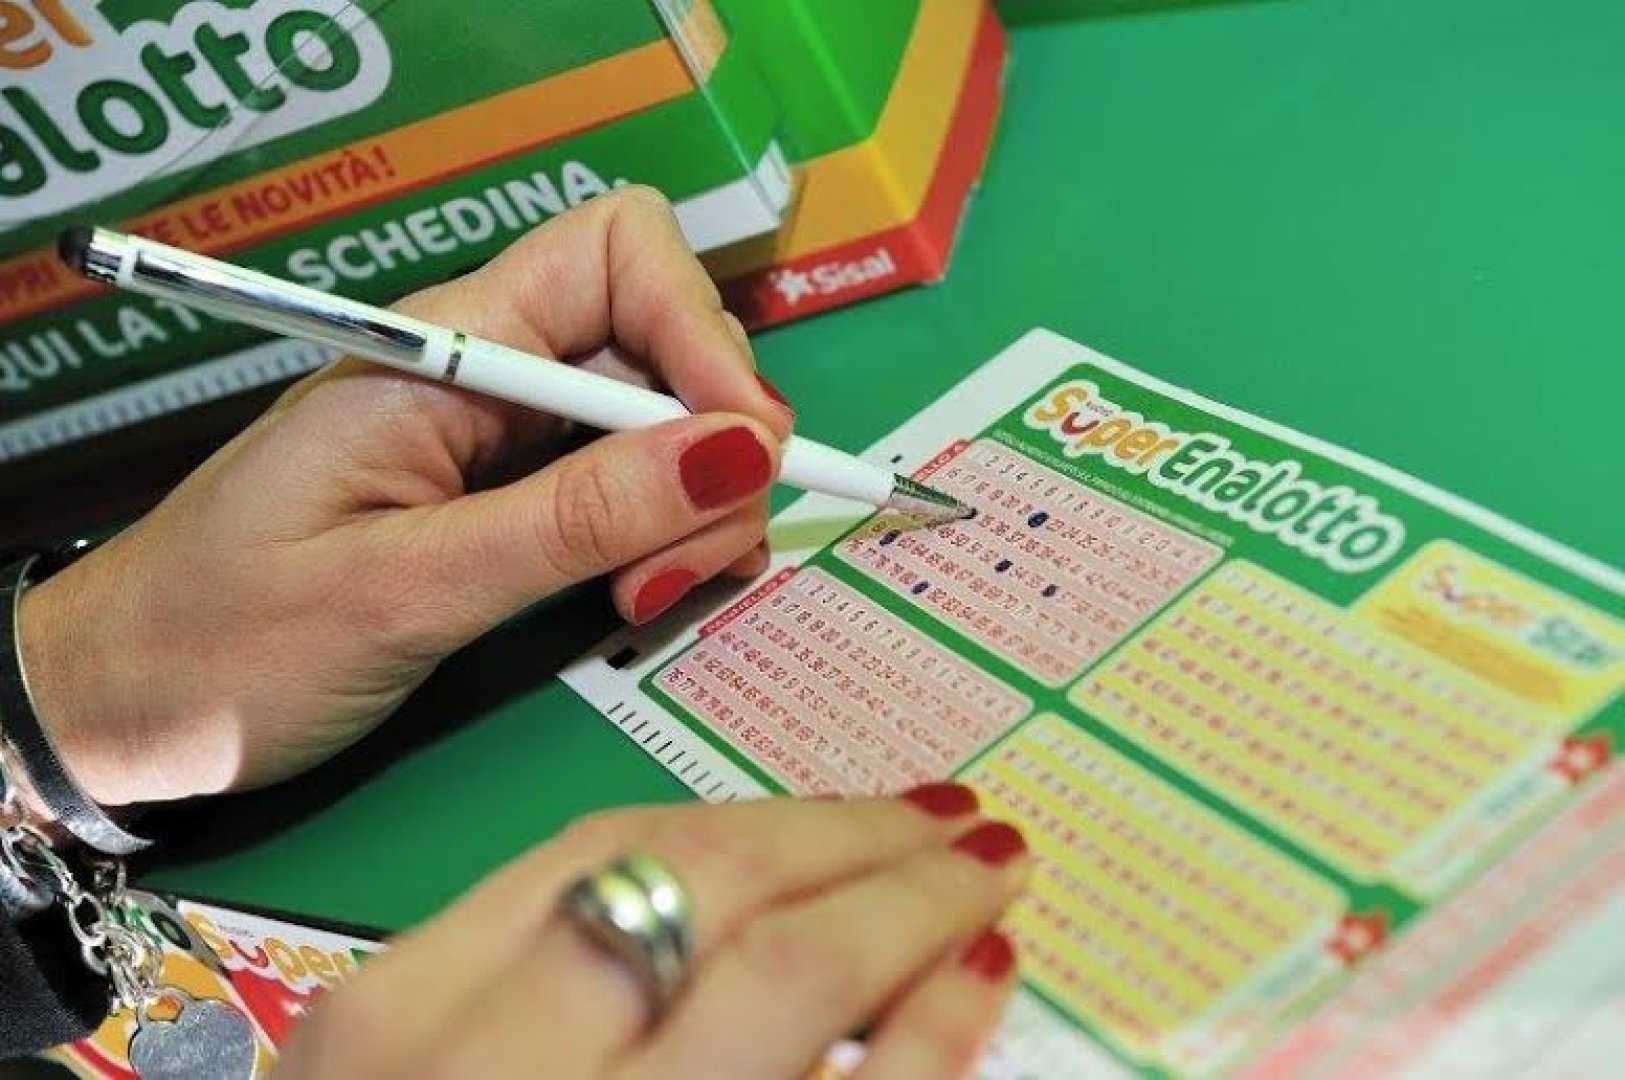 Как лотереи облагаются налогом в россии и сша - вся информация про различные лотереи